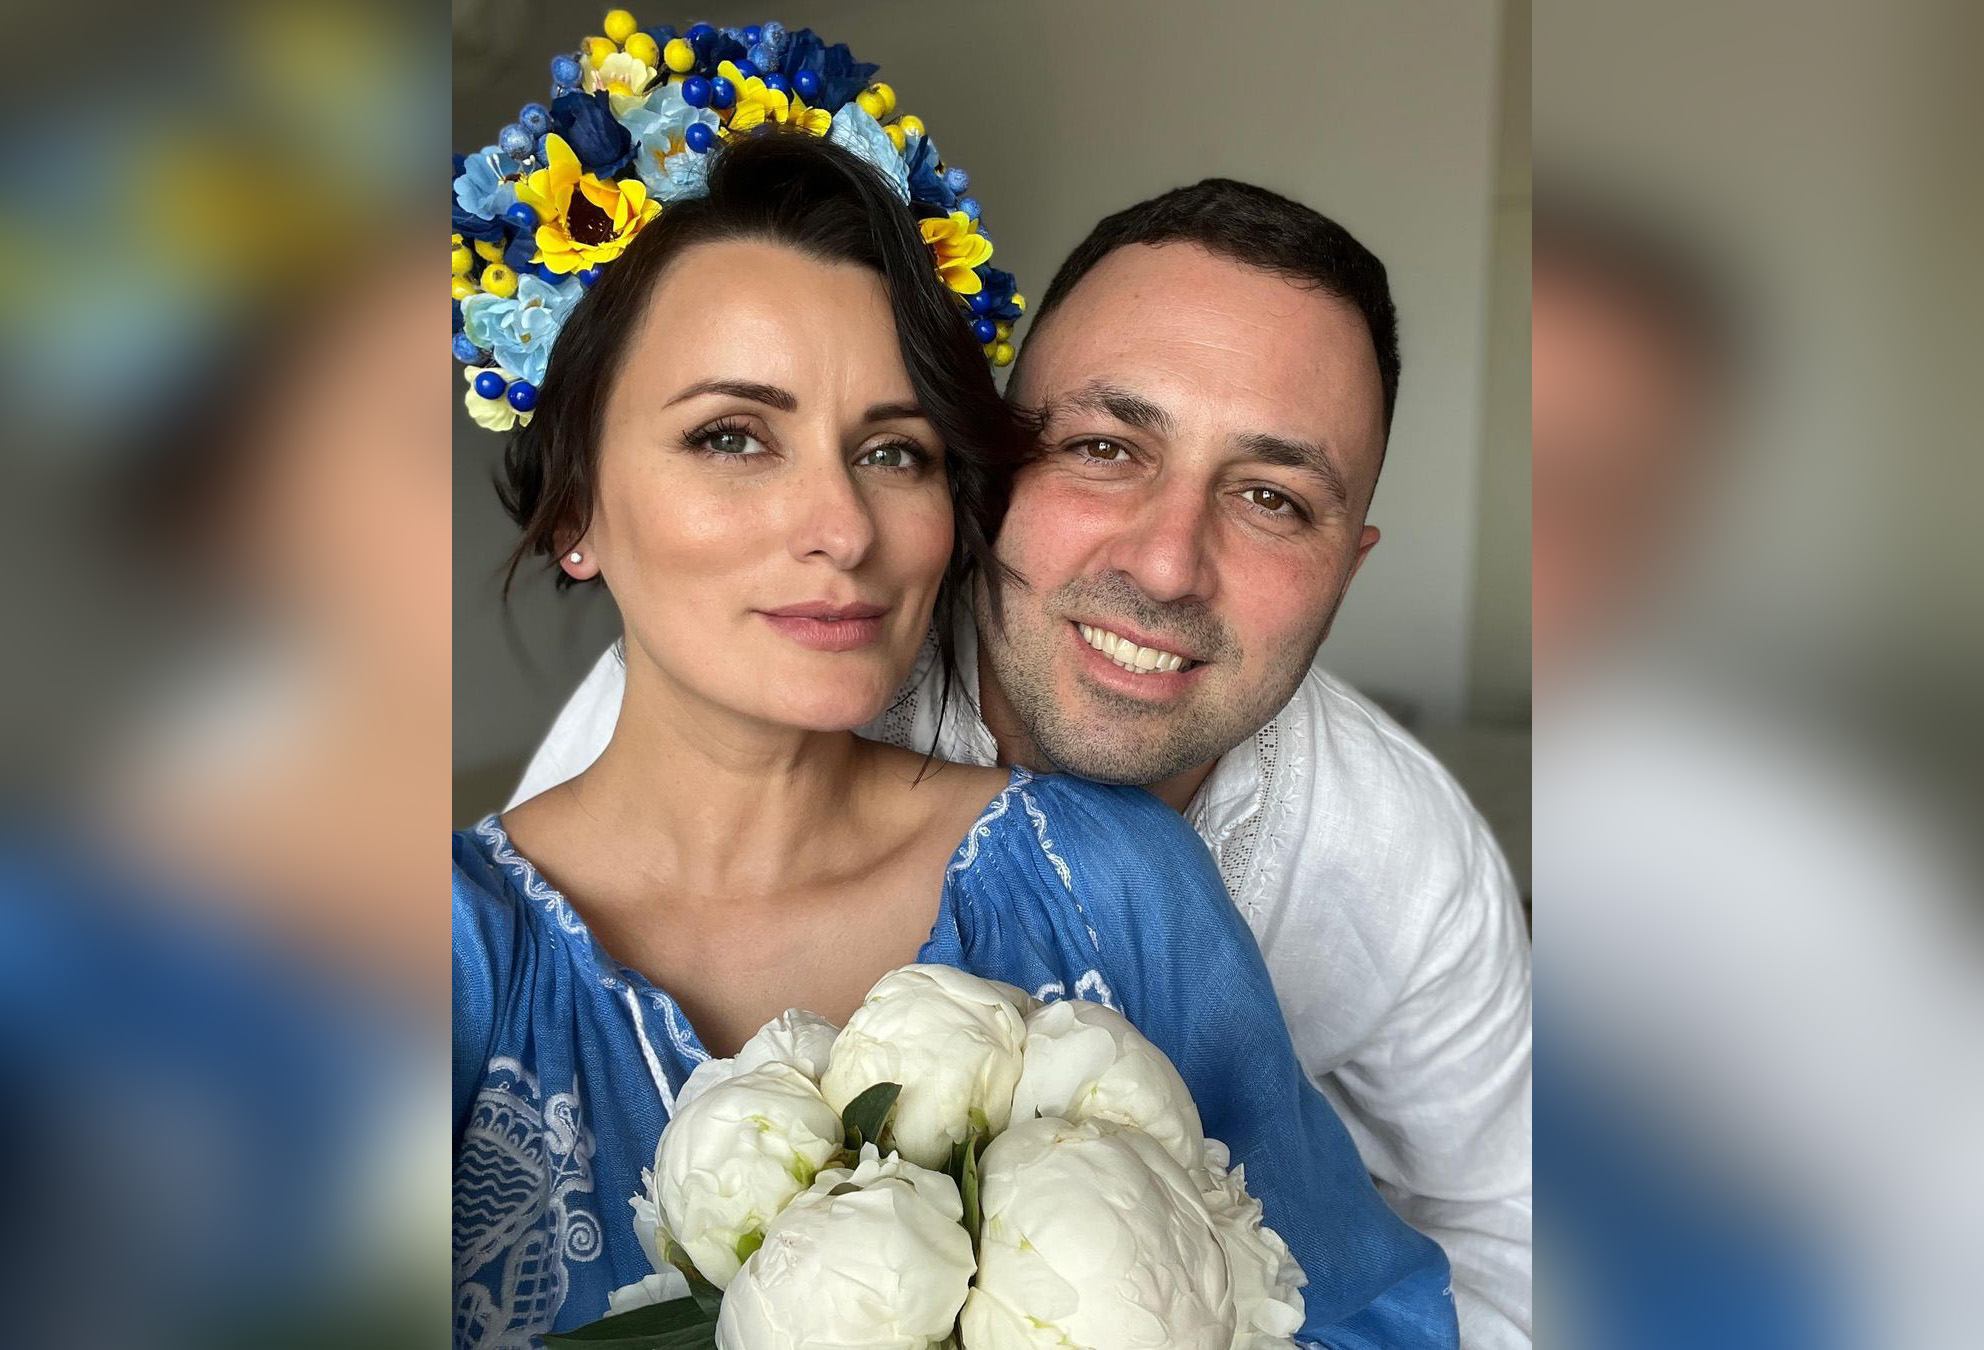 Ліза Глінська спочатку хотіла відмінити весілля, але потім подумала, що вони мають право на щастя. Фото: Instagram.com/lizaglinskaya/